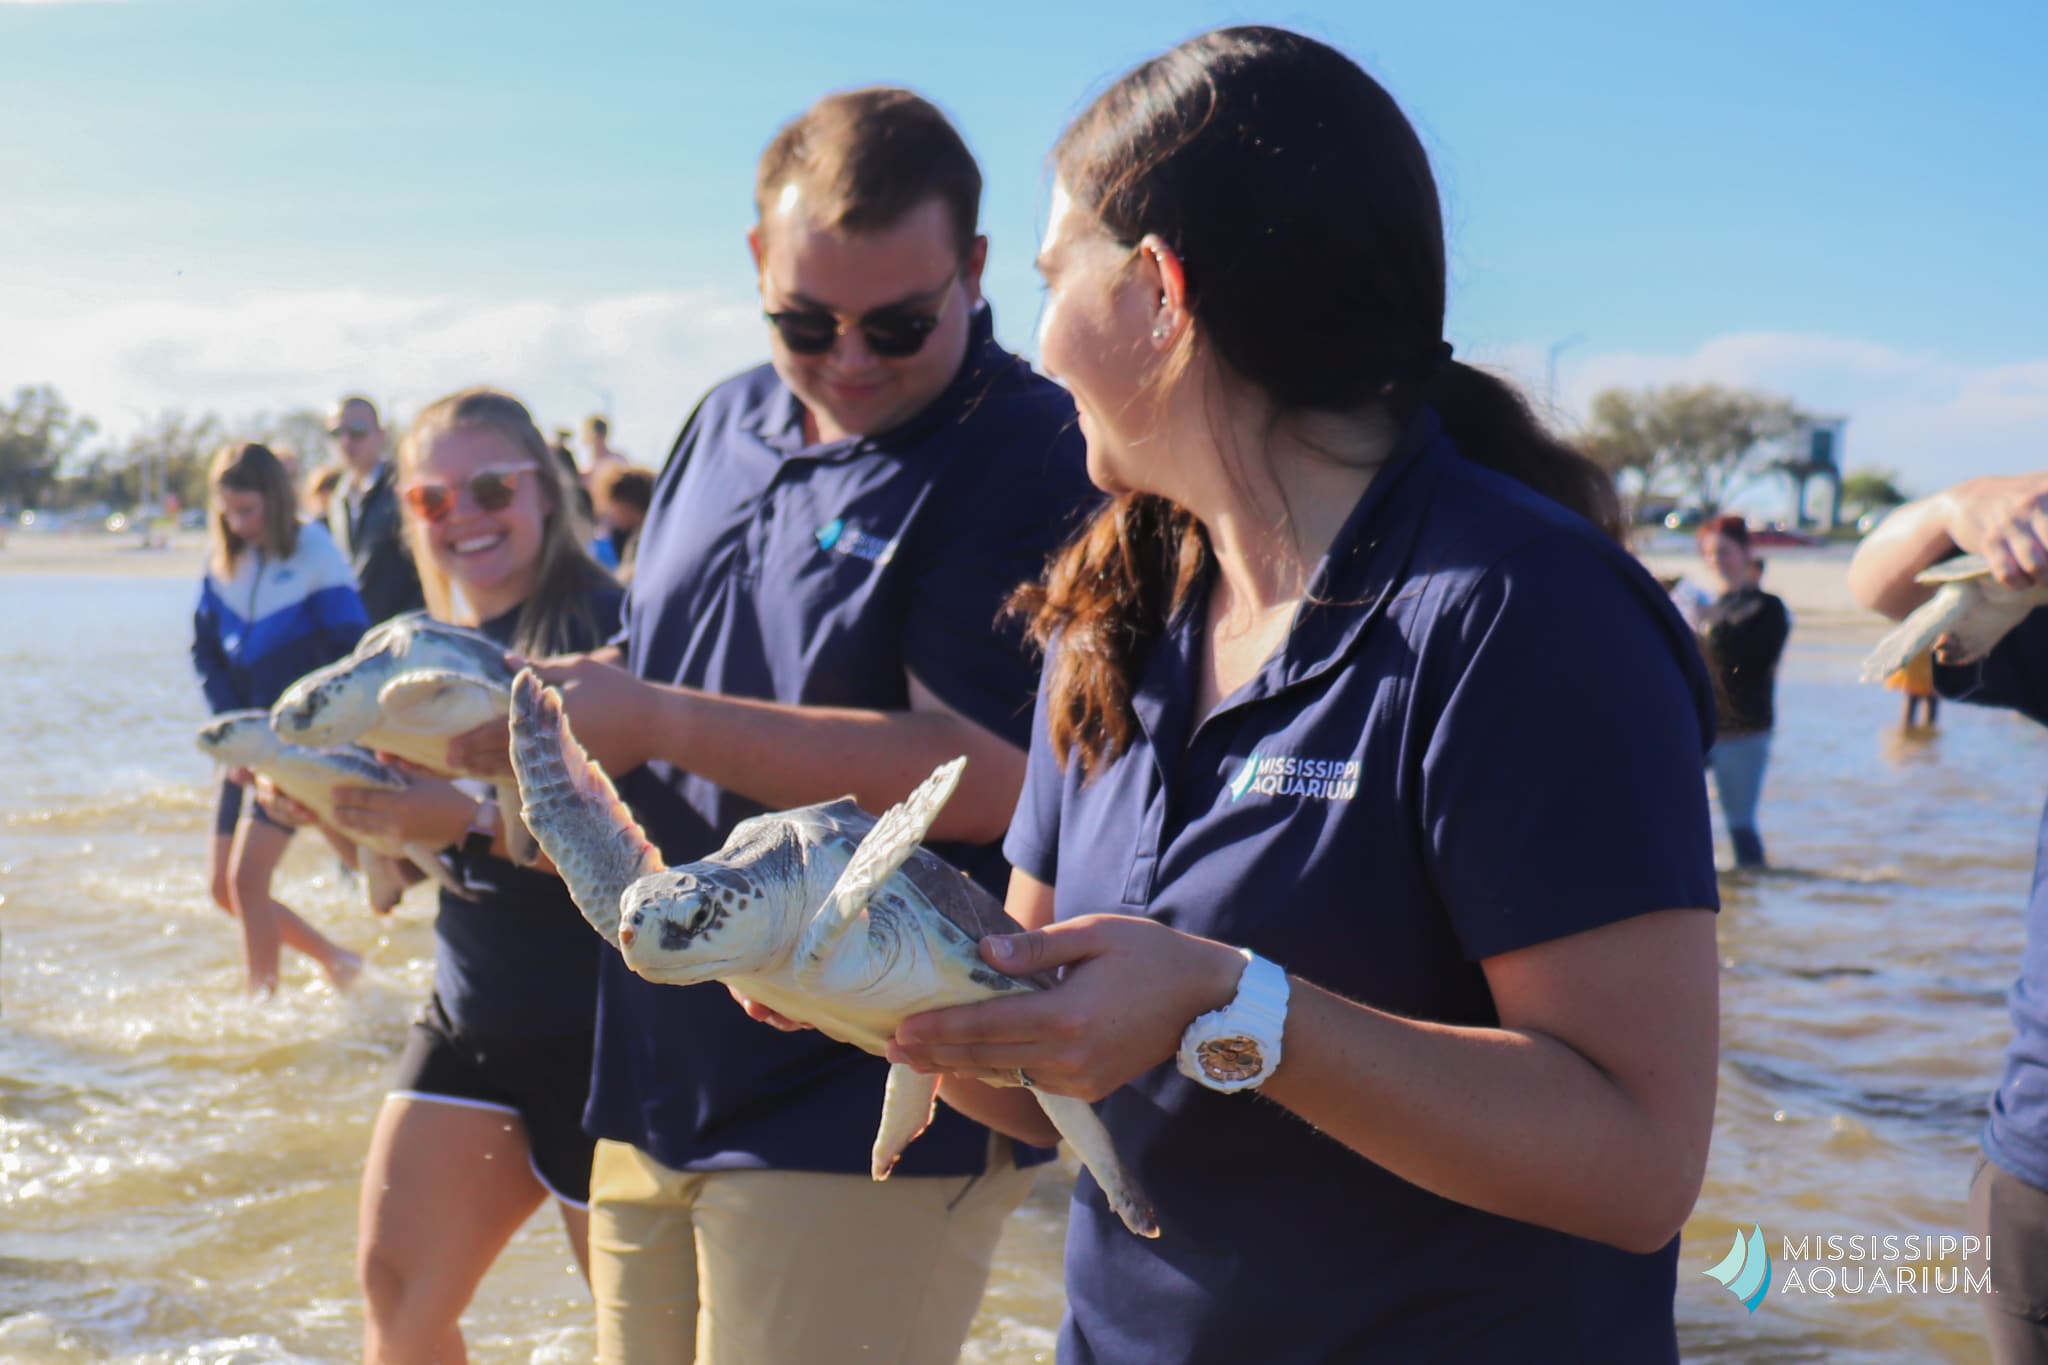 Mississippi Aquarium releases 6 endangered turtles back into the ocean – SuperTalk Mississippi